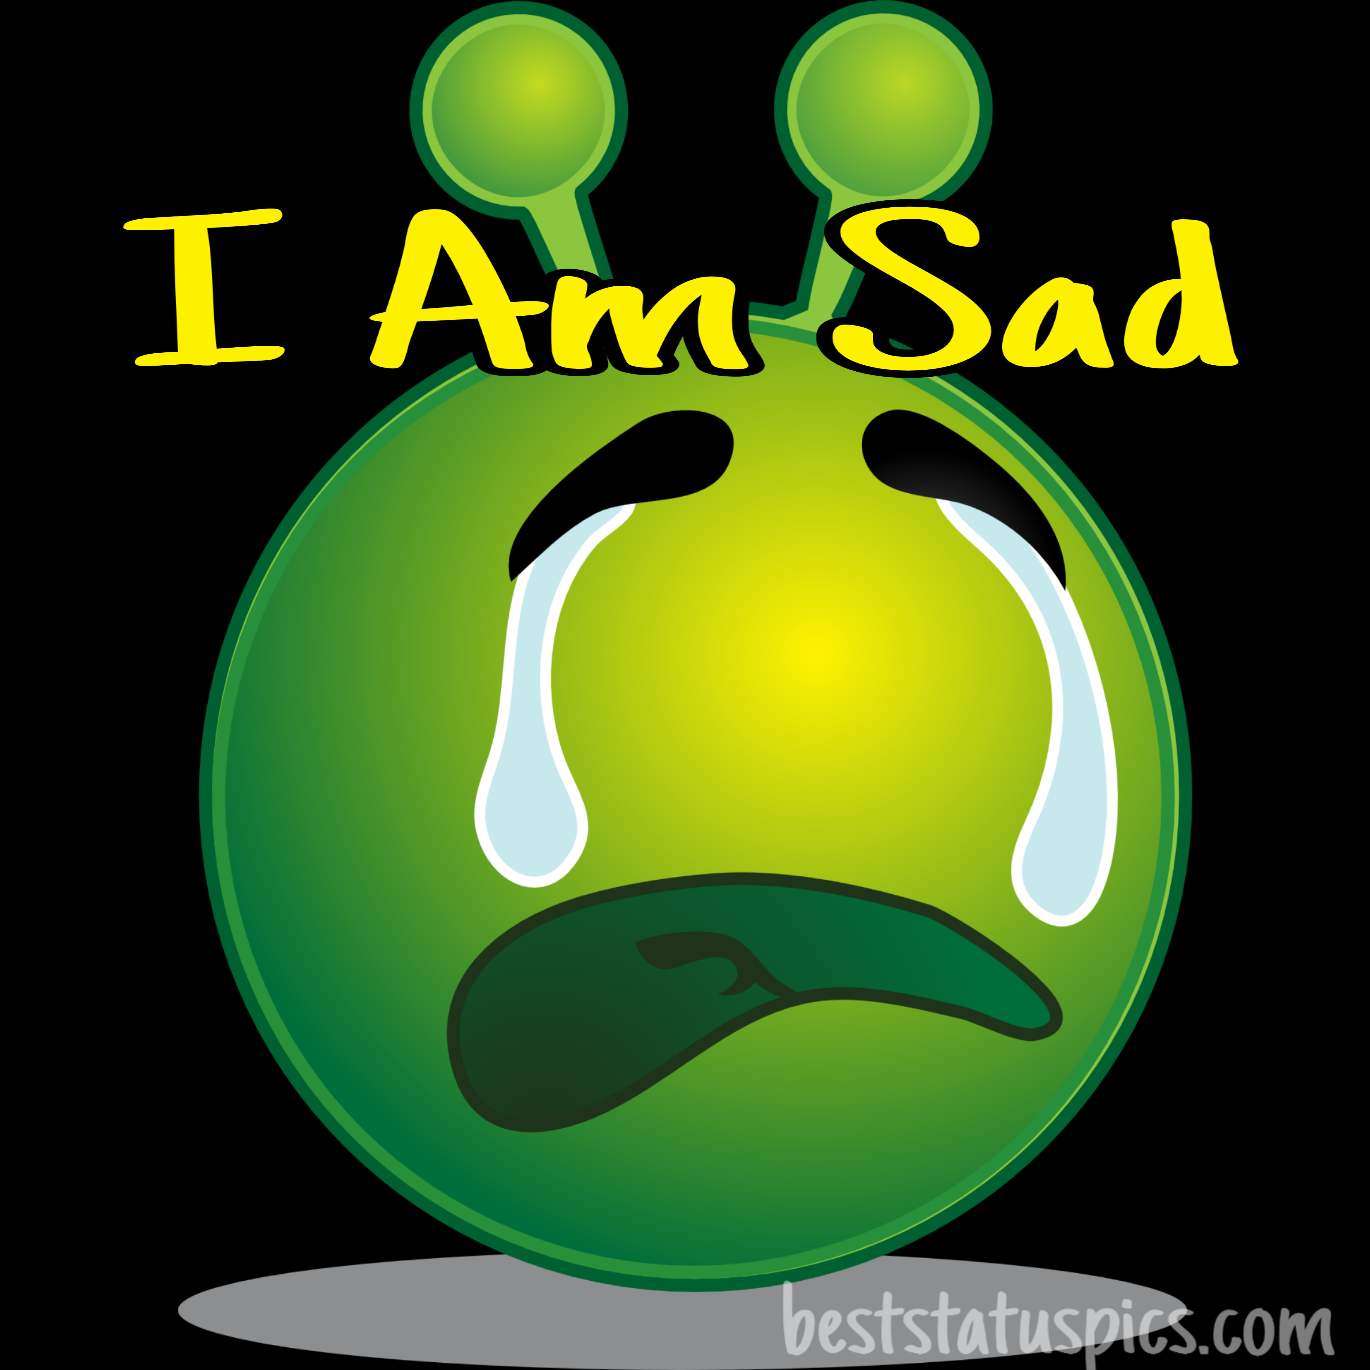 I Am Feeling Sad Whatsapp DP, Status, Images HD - Best Status Pics